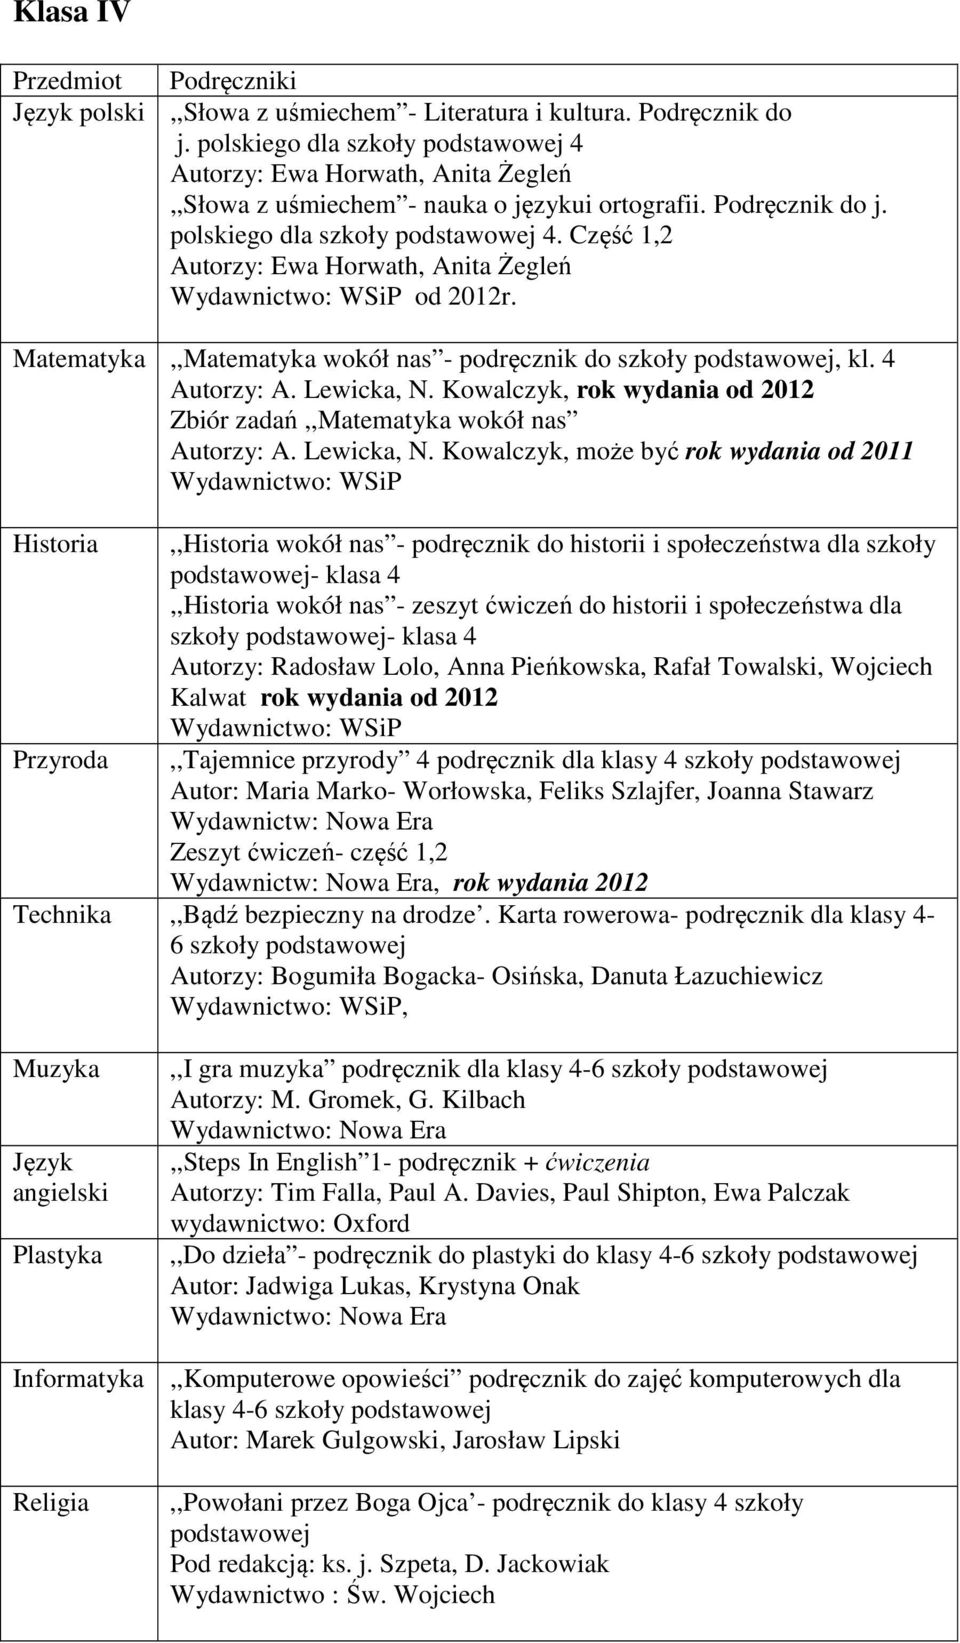 Kowalczyk, rok wydania od 2012 Zbiór zadań,,matematyka wokół nas Autorzy: A. Lewicka, N.